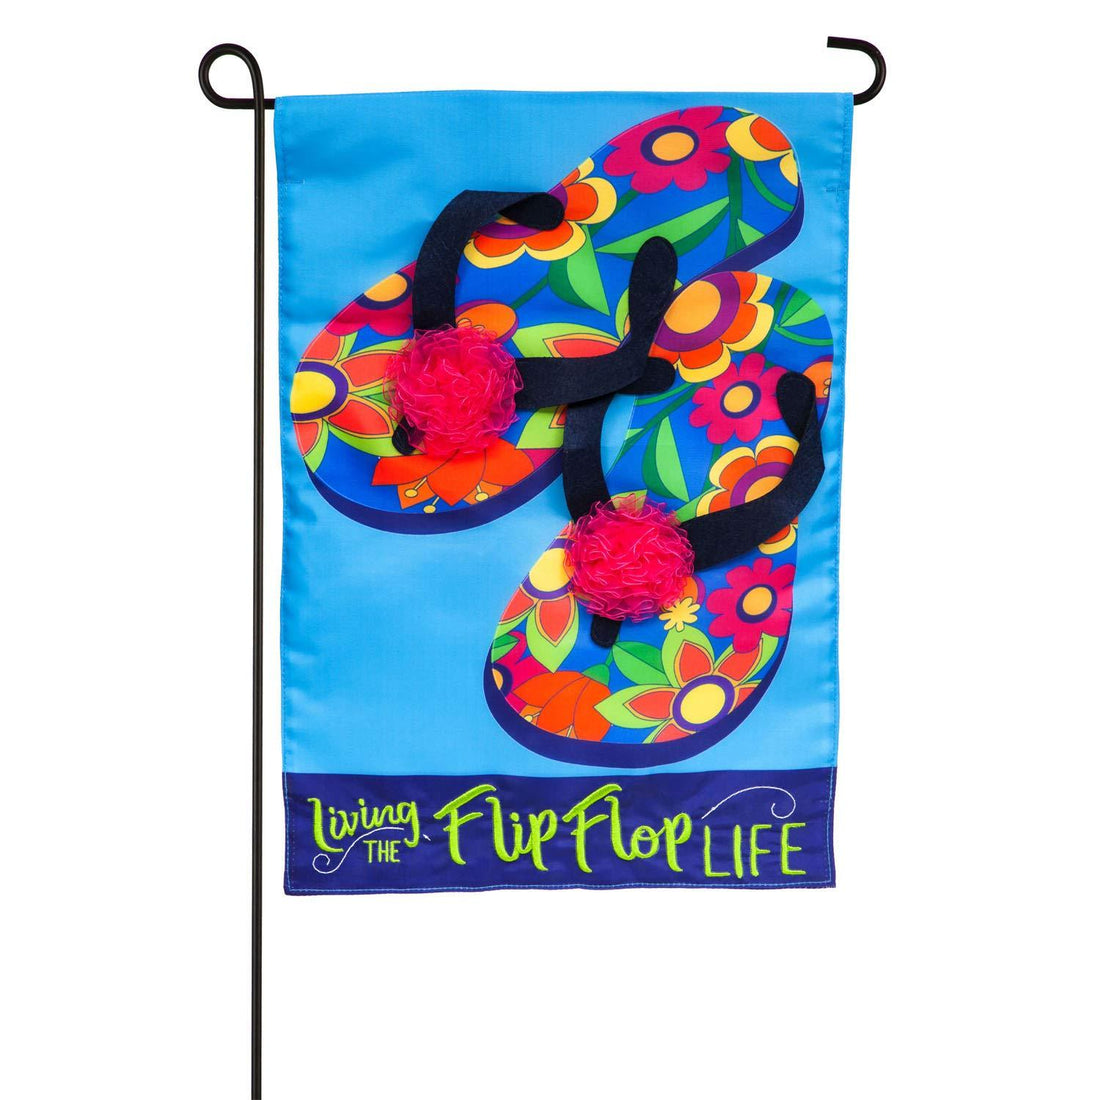 Flip Flop Life Applique Garden Flag - Kitty Hawk Kites Online Store